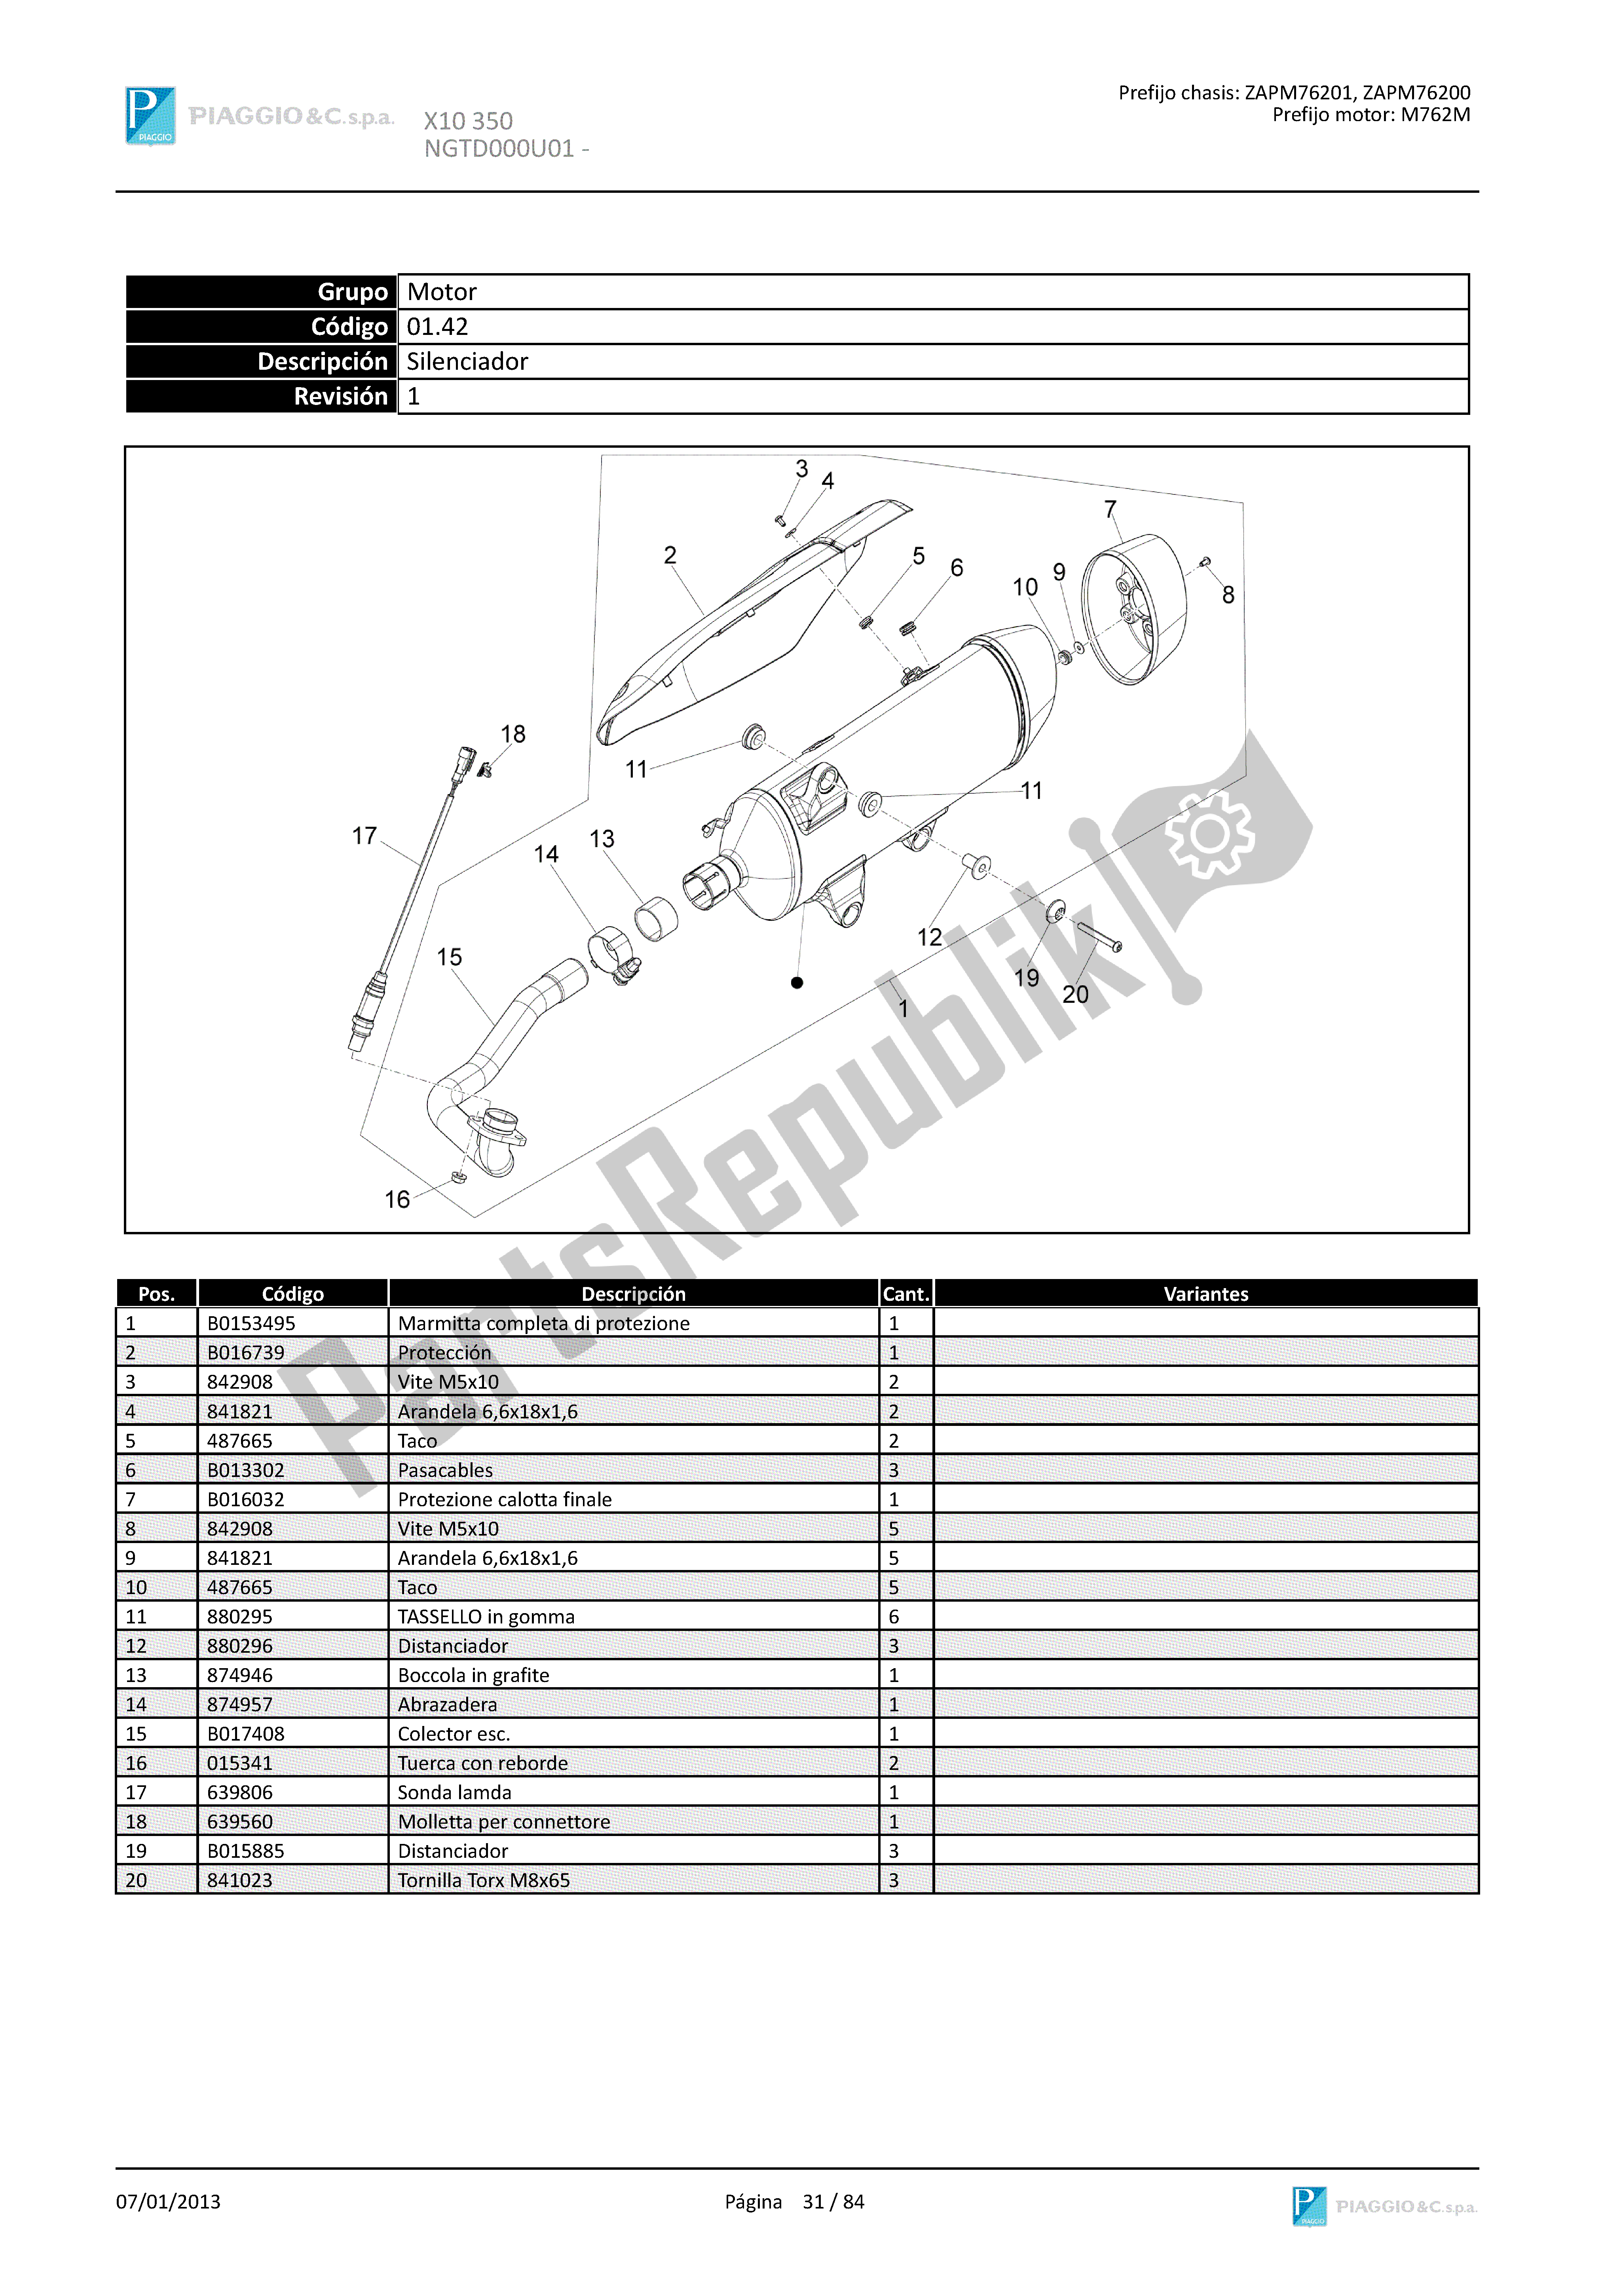 Todas las partes para Silenciador de Piaggio X 10 350 2012 - 2013